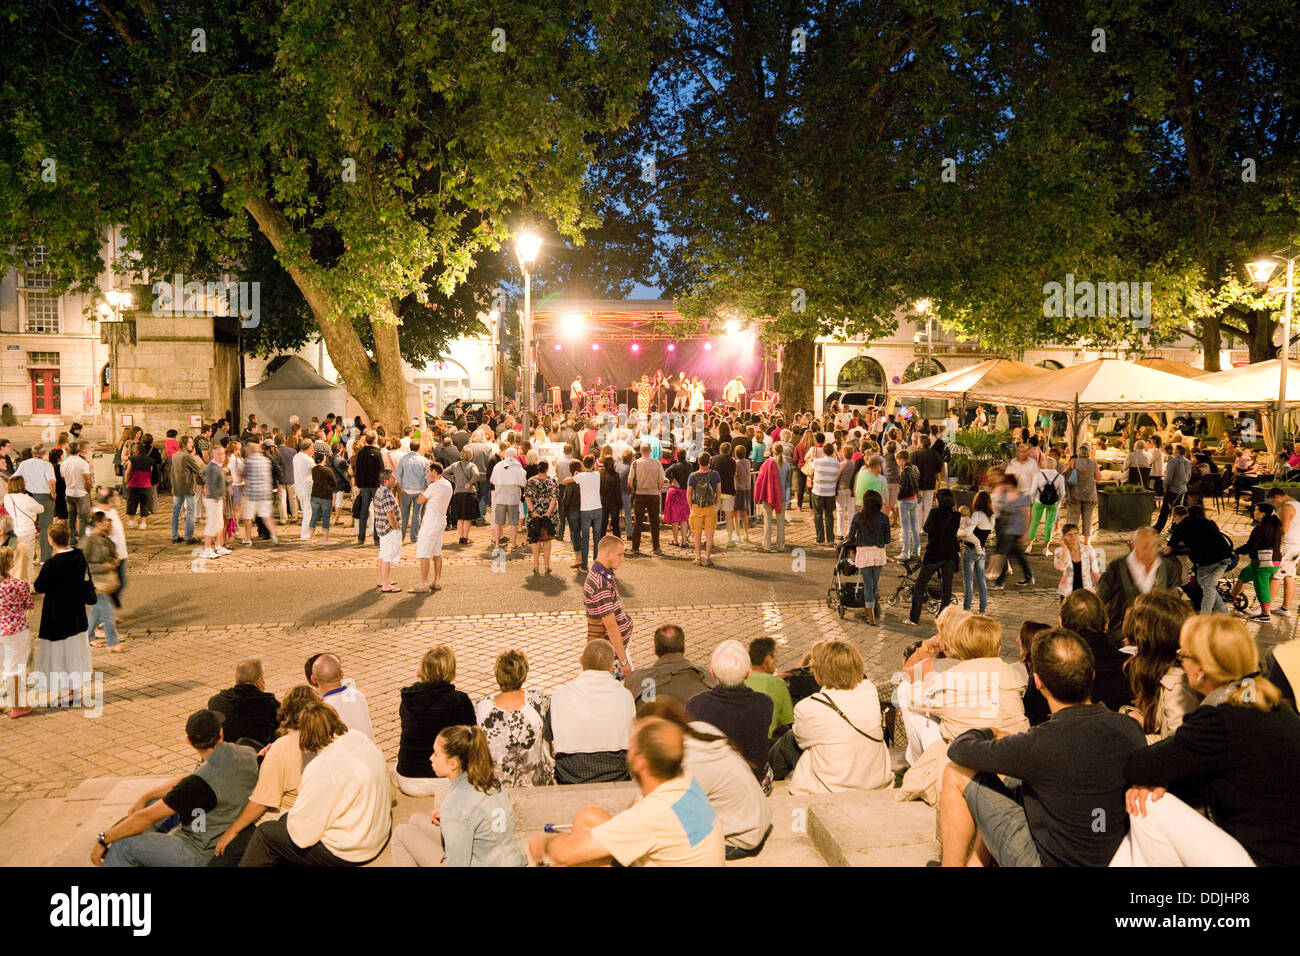 Les gens d'écouter un concert à la place de la ville dans la nuit, le centre-ville de Blois, Loir-et-Cher, Loire, France, Europe Banque D'Images